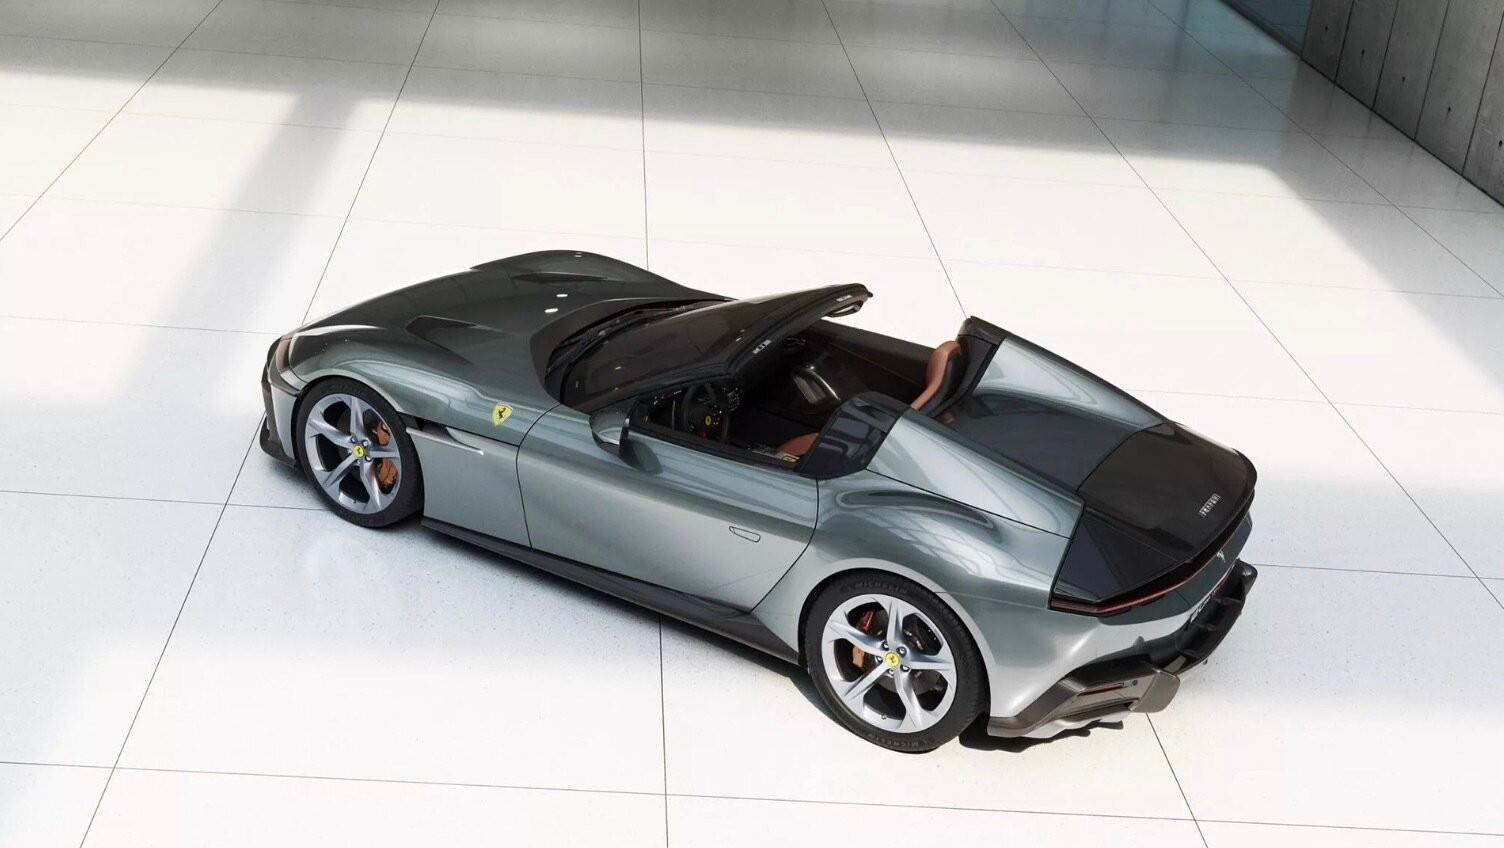 Siêu xe Ferrari 12Cilindri vừa ra mắt thế giới đã 'lọt mắt xanh' Cường Đô la - 7